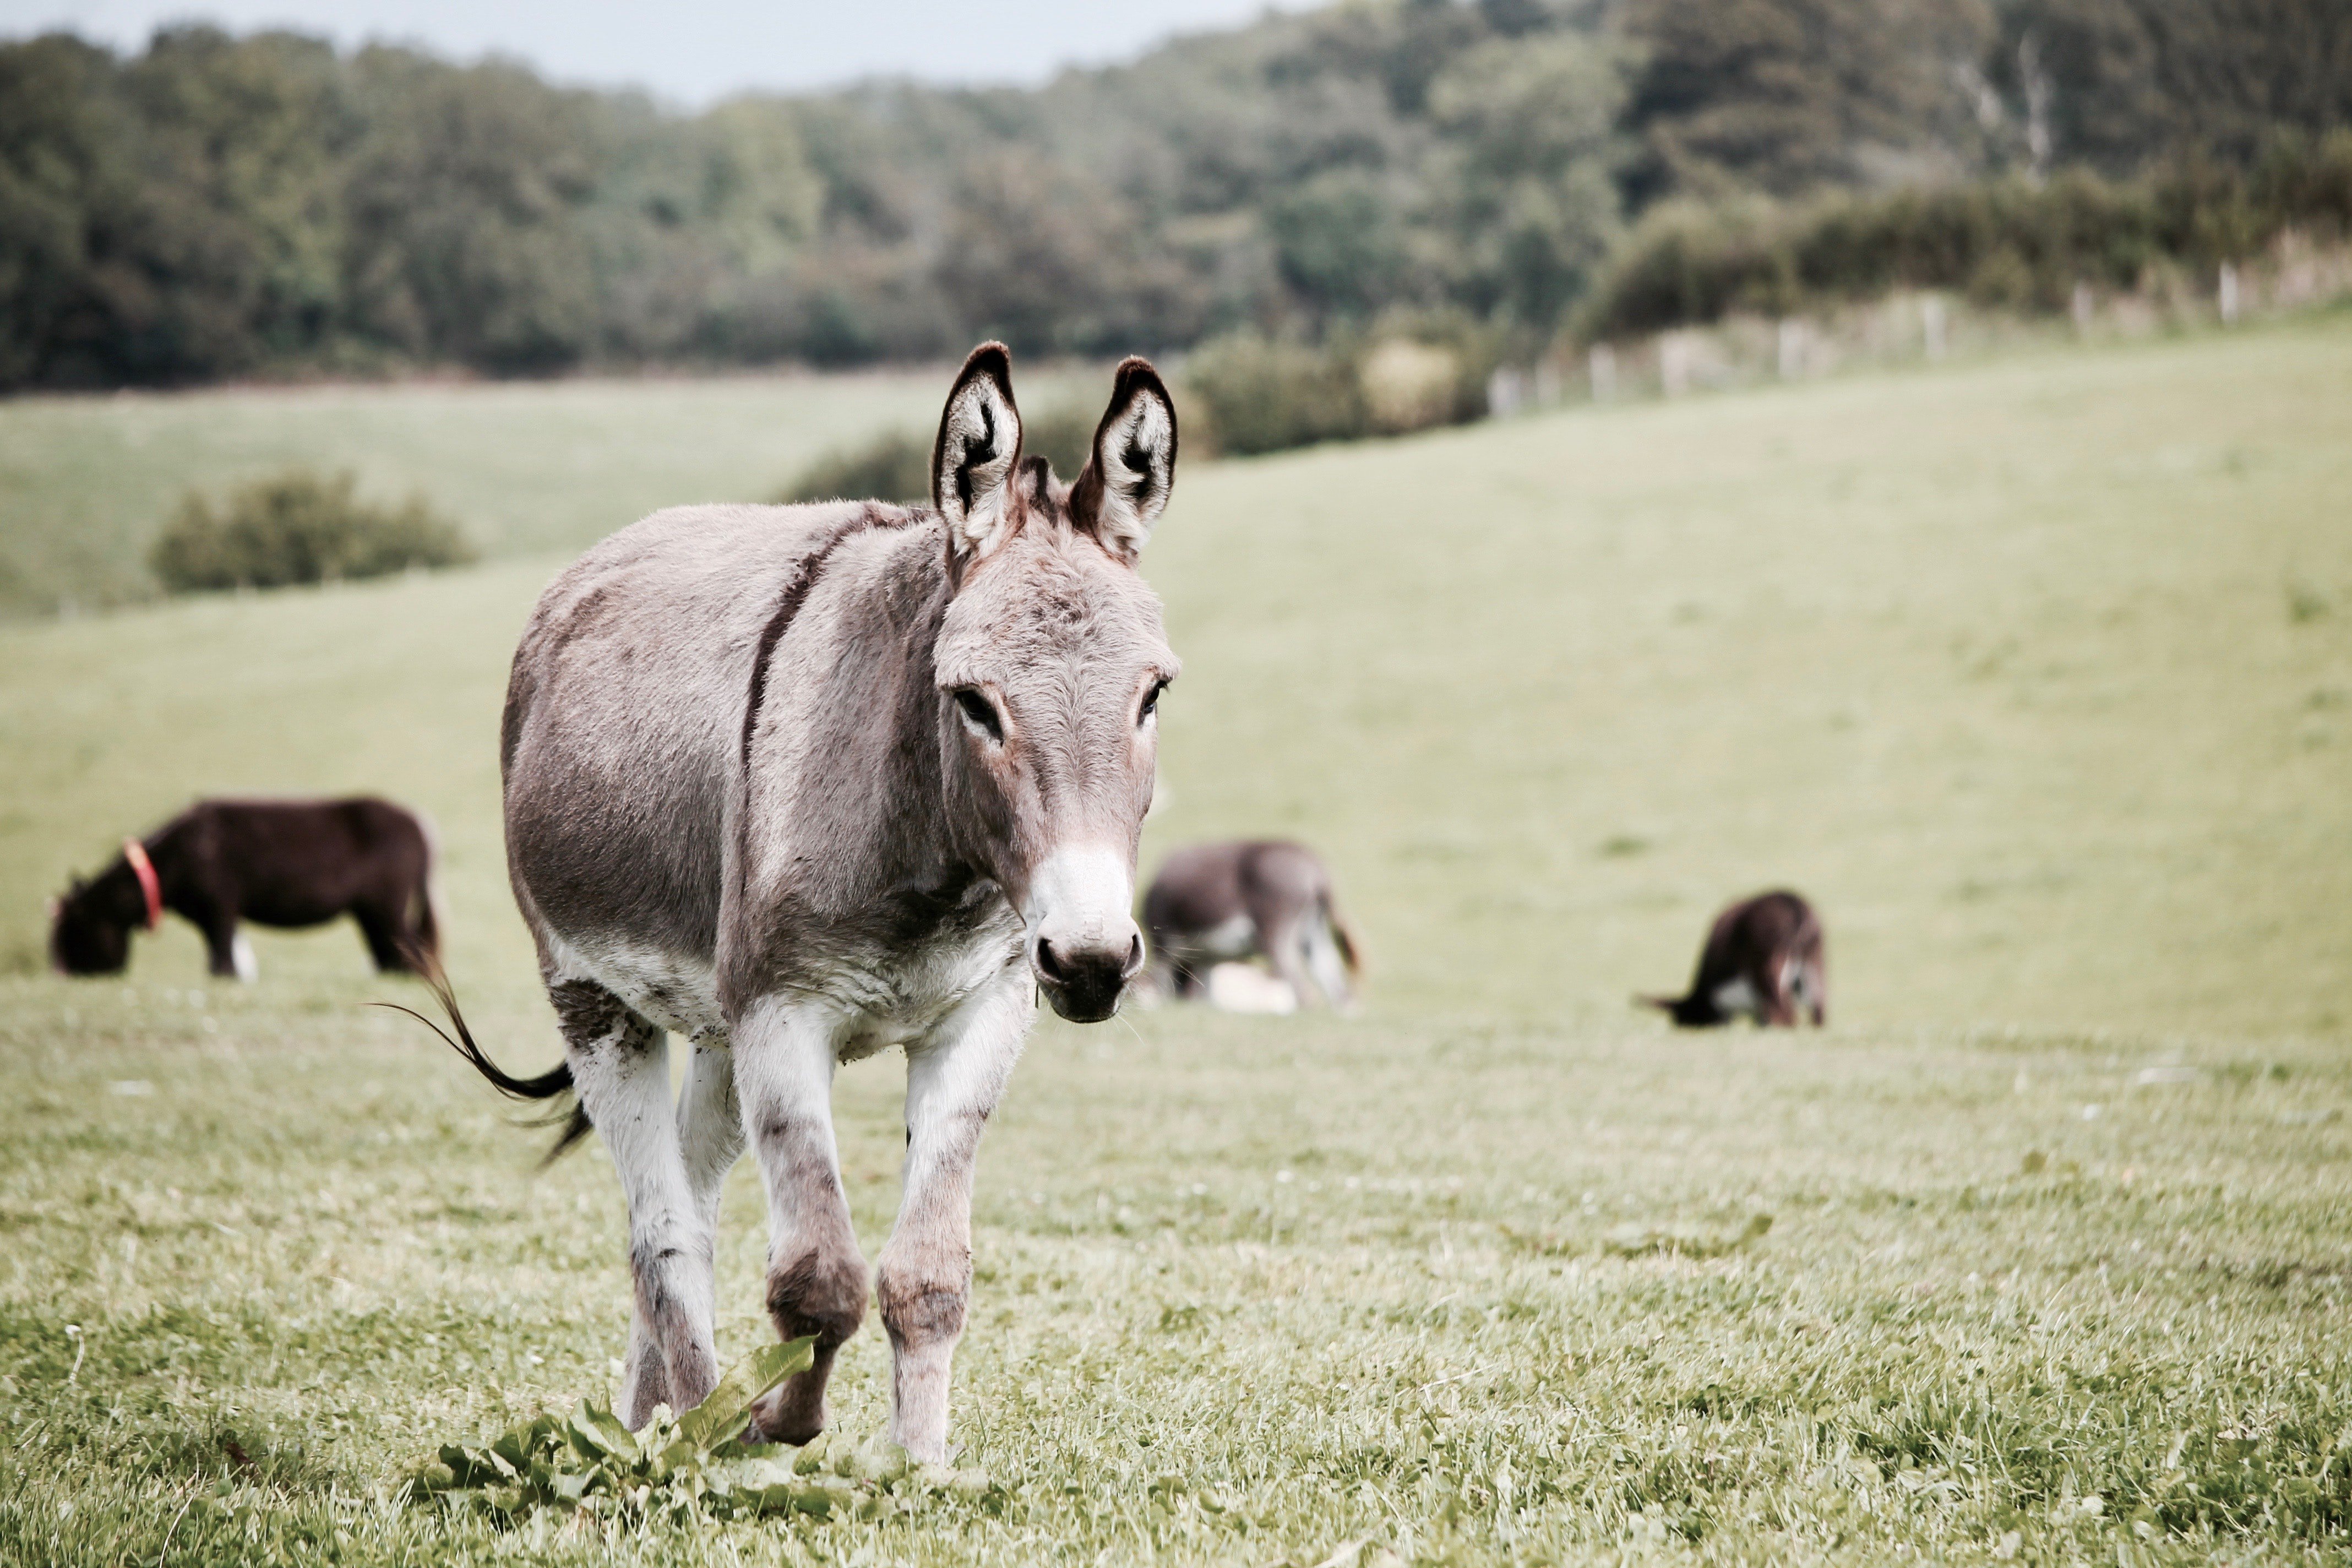 A donkey in the field. | Pexels/ Leroy Huckett